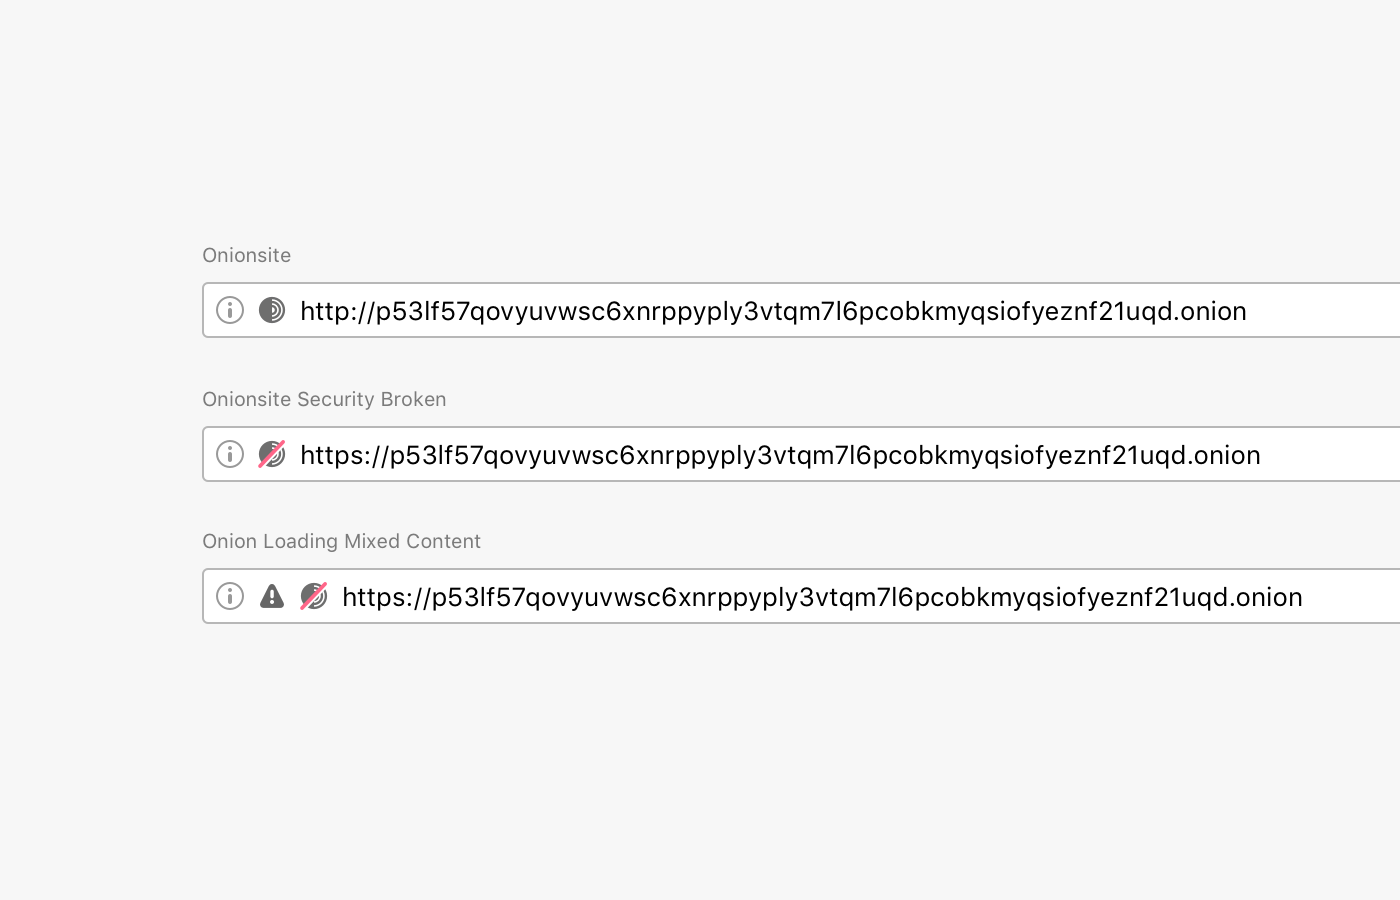 Індыкатары бяспекі URL-адрасы браўзера Tor 9.5